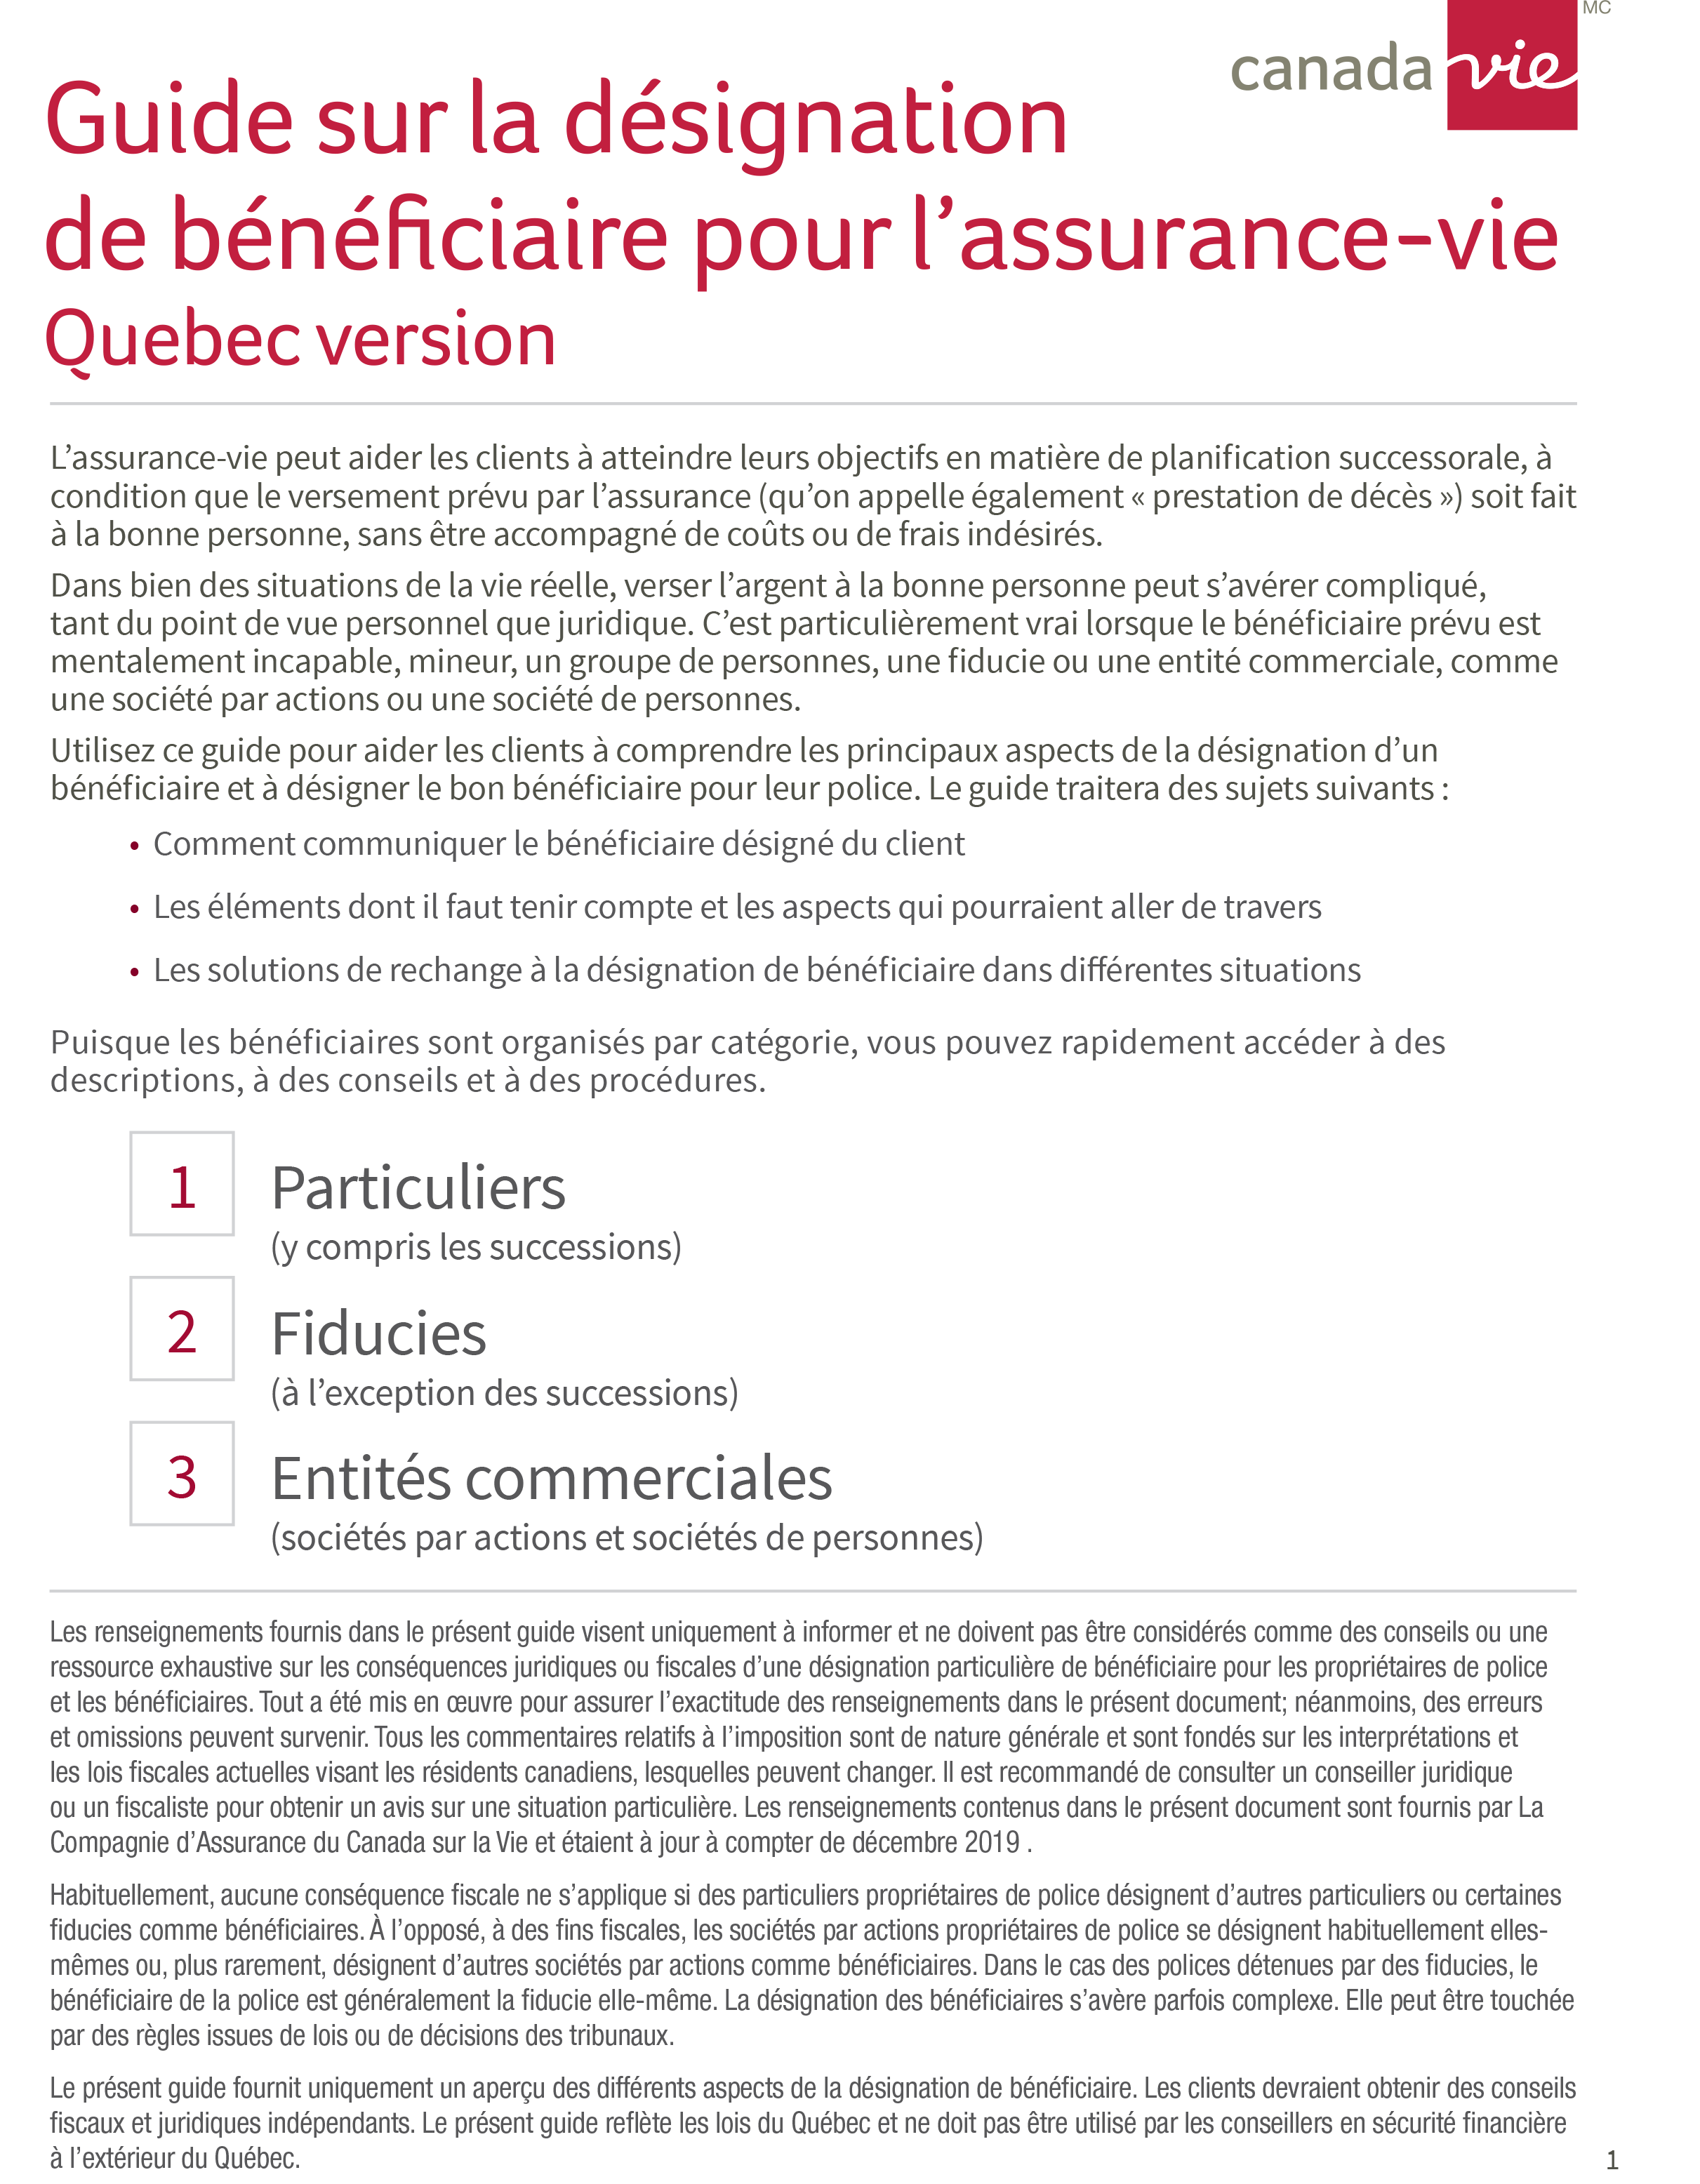 Guide sur la désignation de bénéficiaire pour l’assurance-vie (Quebec version) image